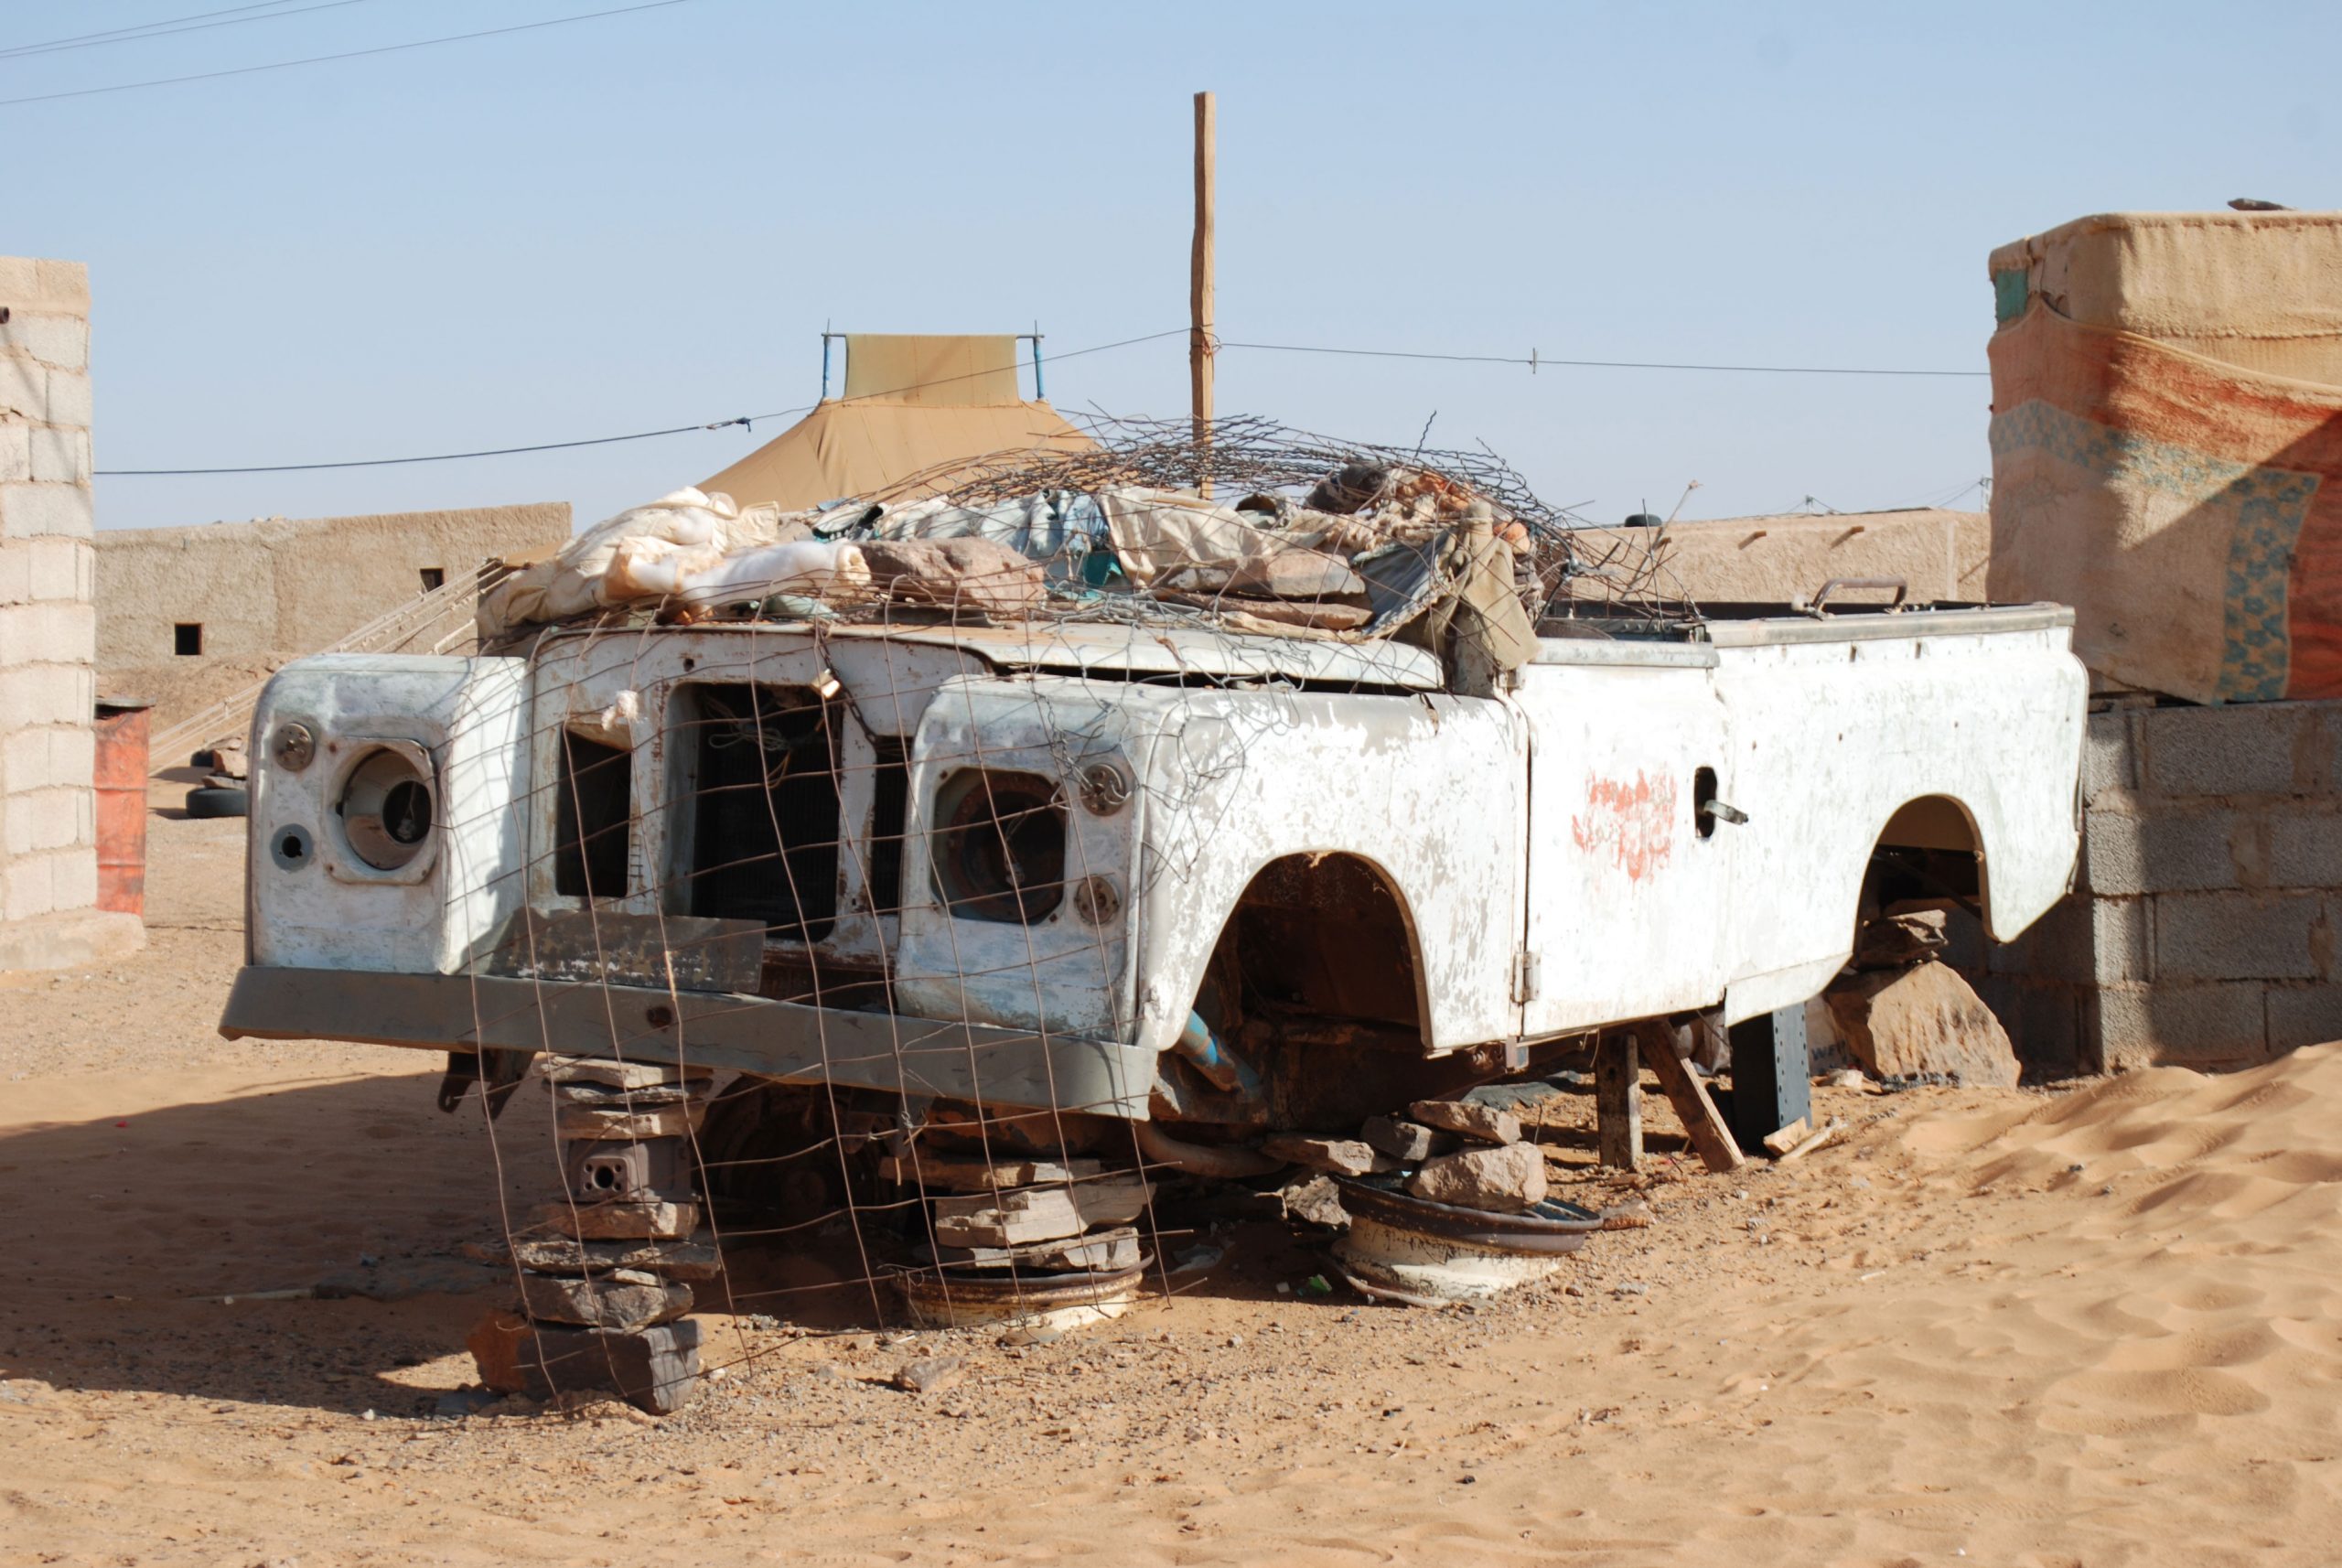 De cómo el Land Rover inspiró poesías saharauis